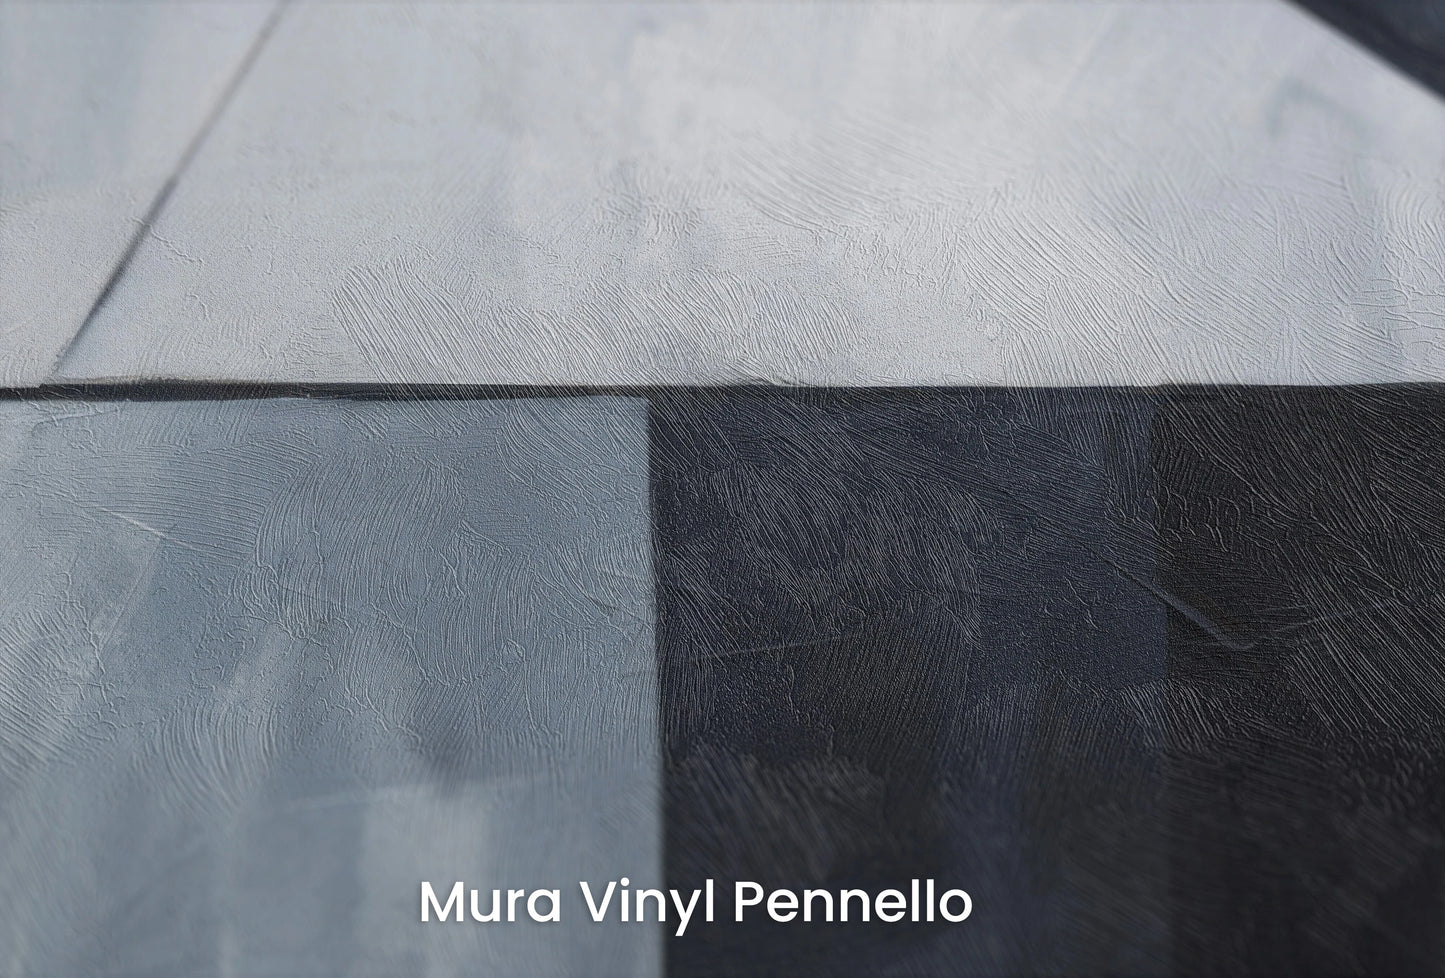 Zbliżenie na artystyczną fototapetę o nazwie Sharp Edges na podłożu Mura Vinyl Pennello - faktura pociągnięć pędzla malarskiego.